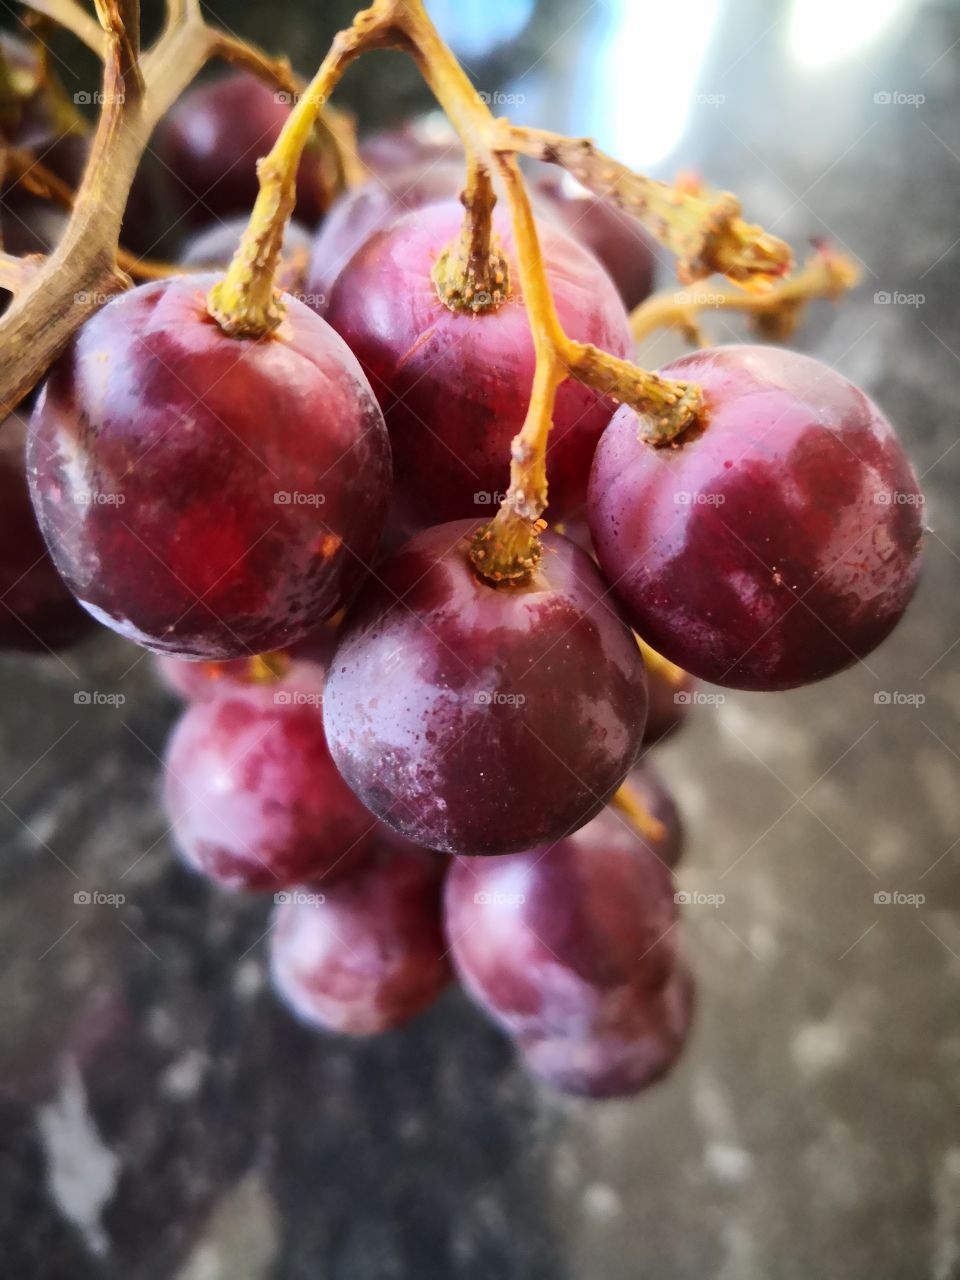 Delicious juicy grapes